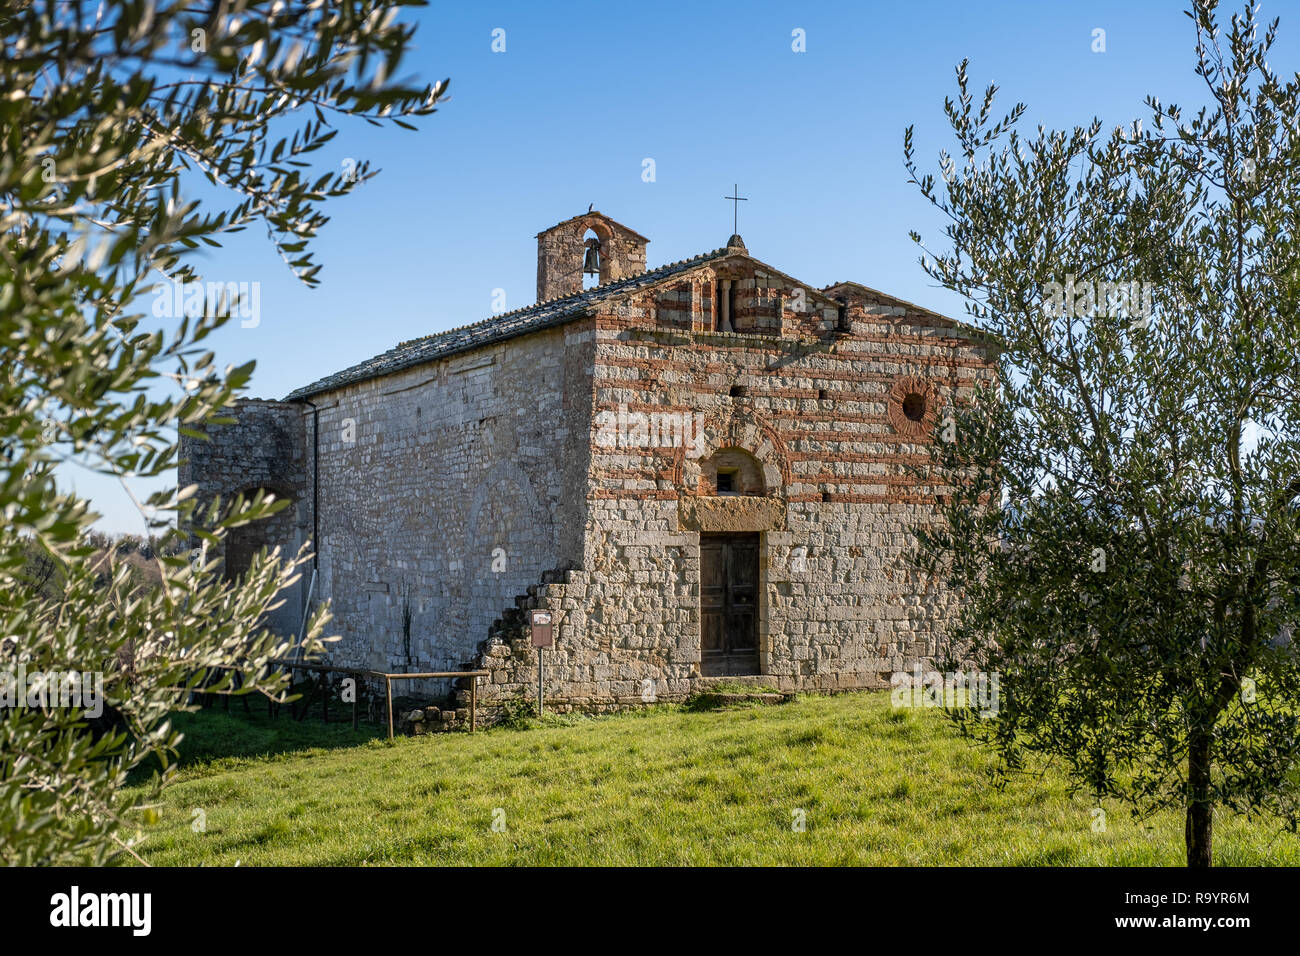 Santi Ippolito y Cassiano iglesia románica es un lugar de culto católico ubicado en la localidad de Coneo, en el municipio de Colle di Val d'Elsa Foto de stock